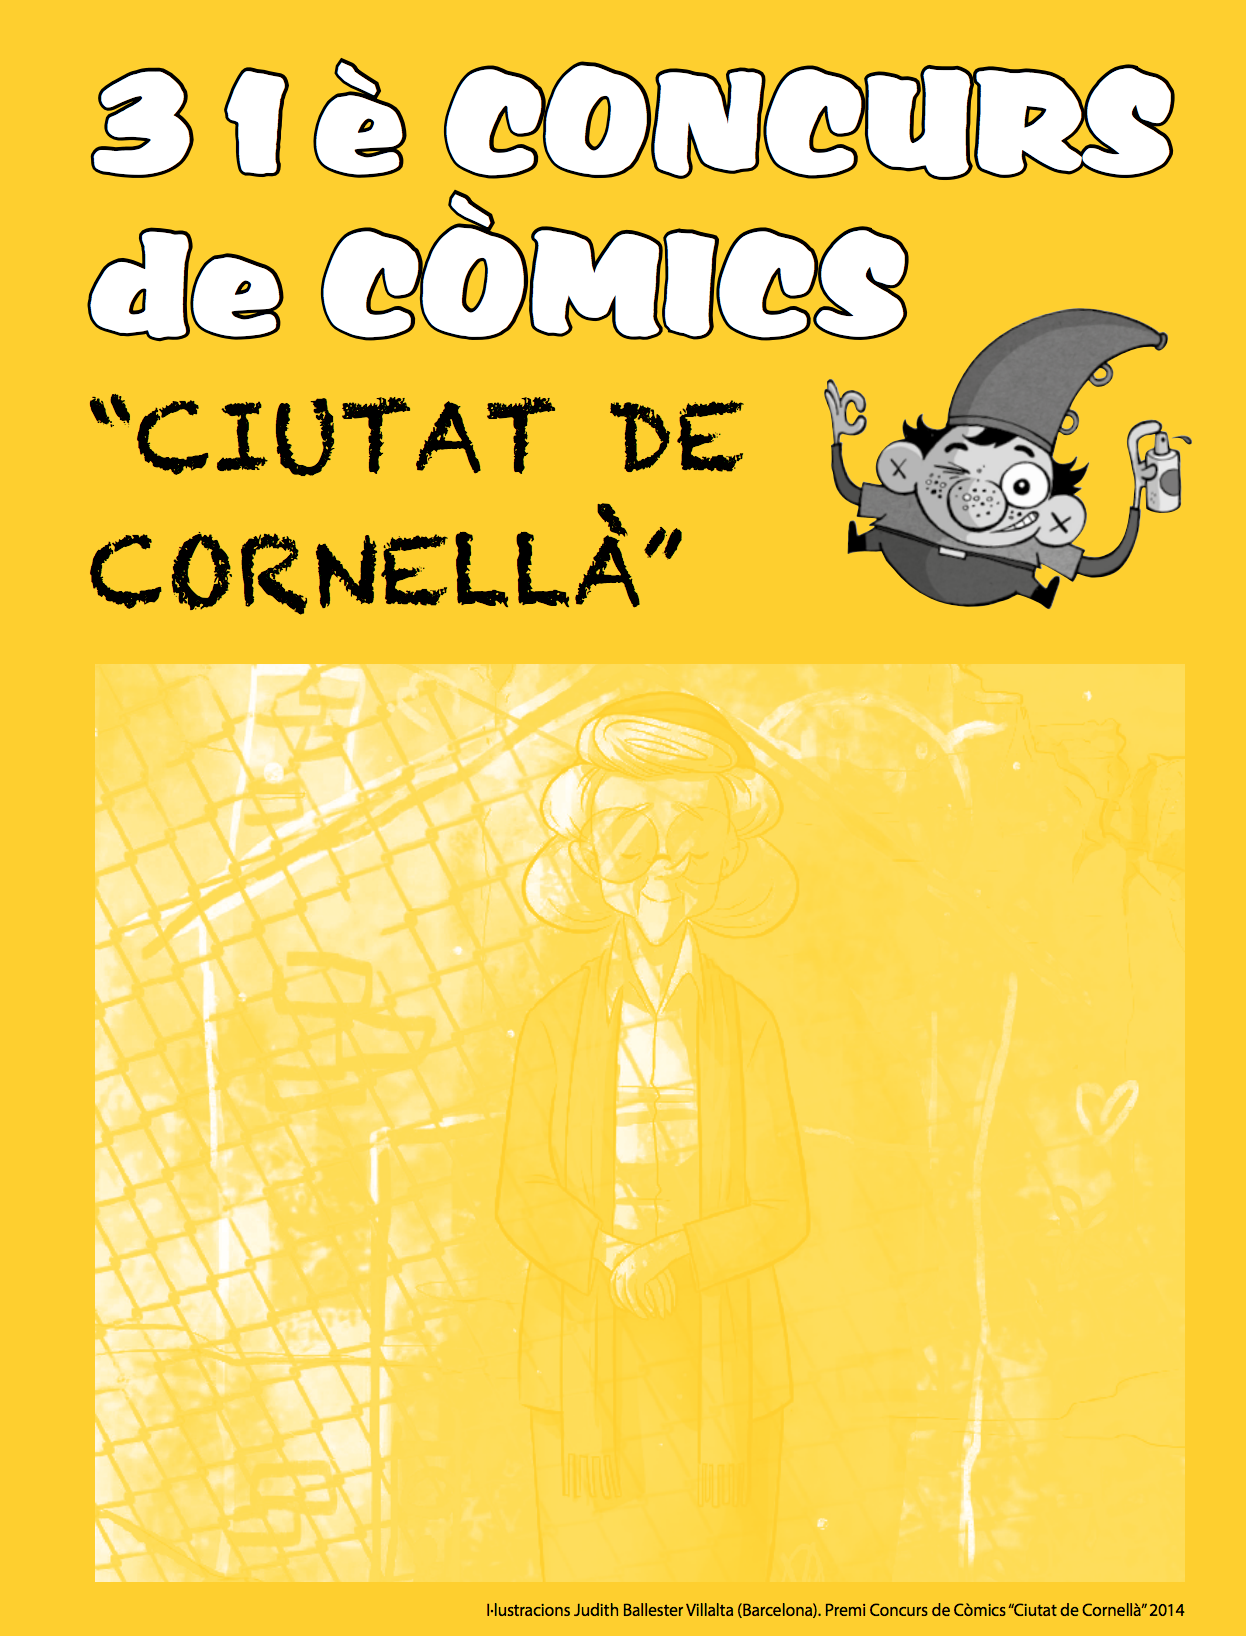 Concurso de Cómics "Ciutat de Cornellà"